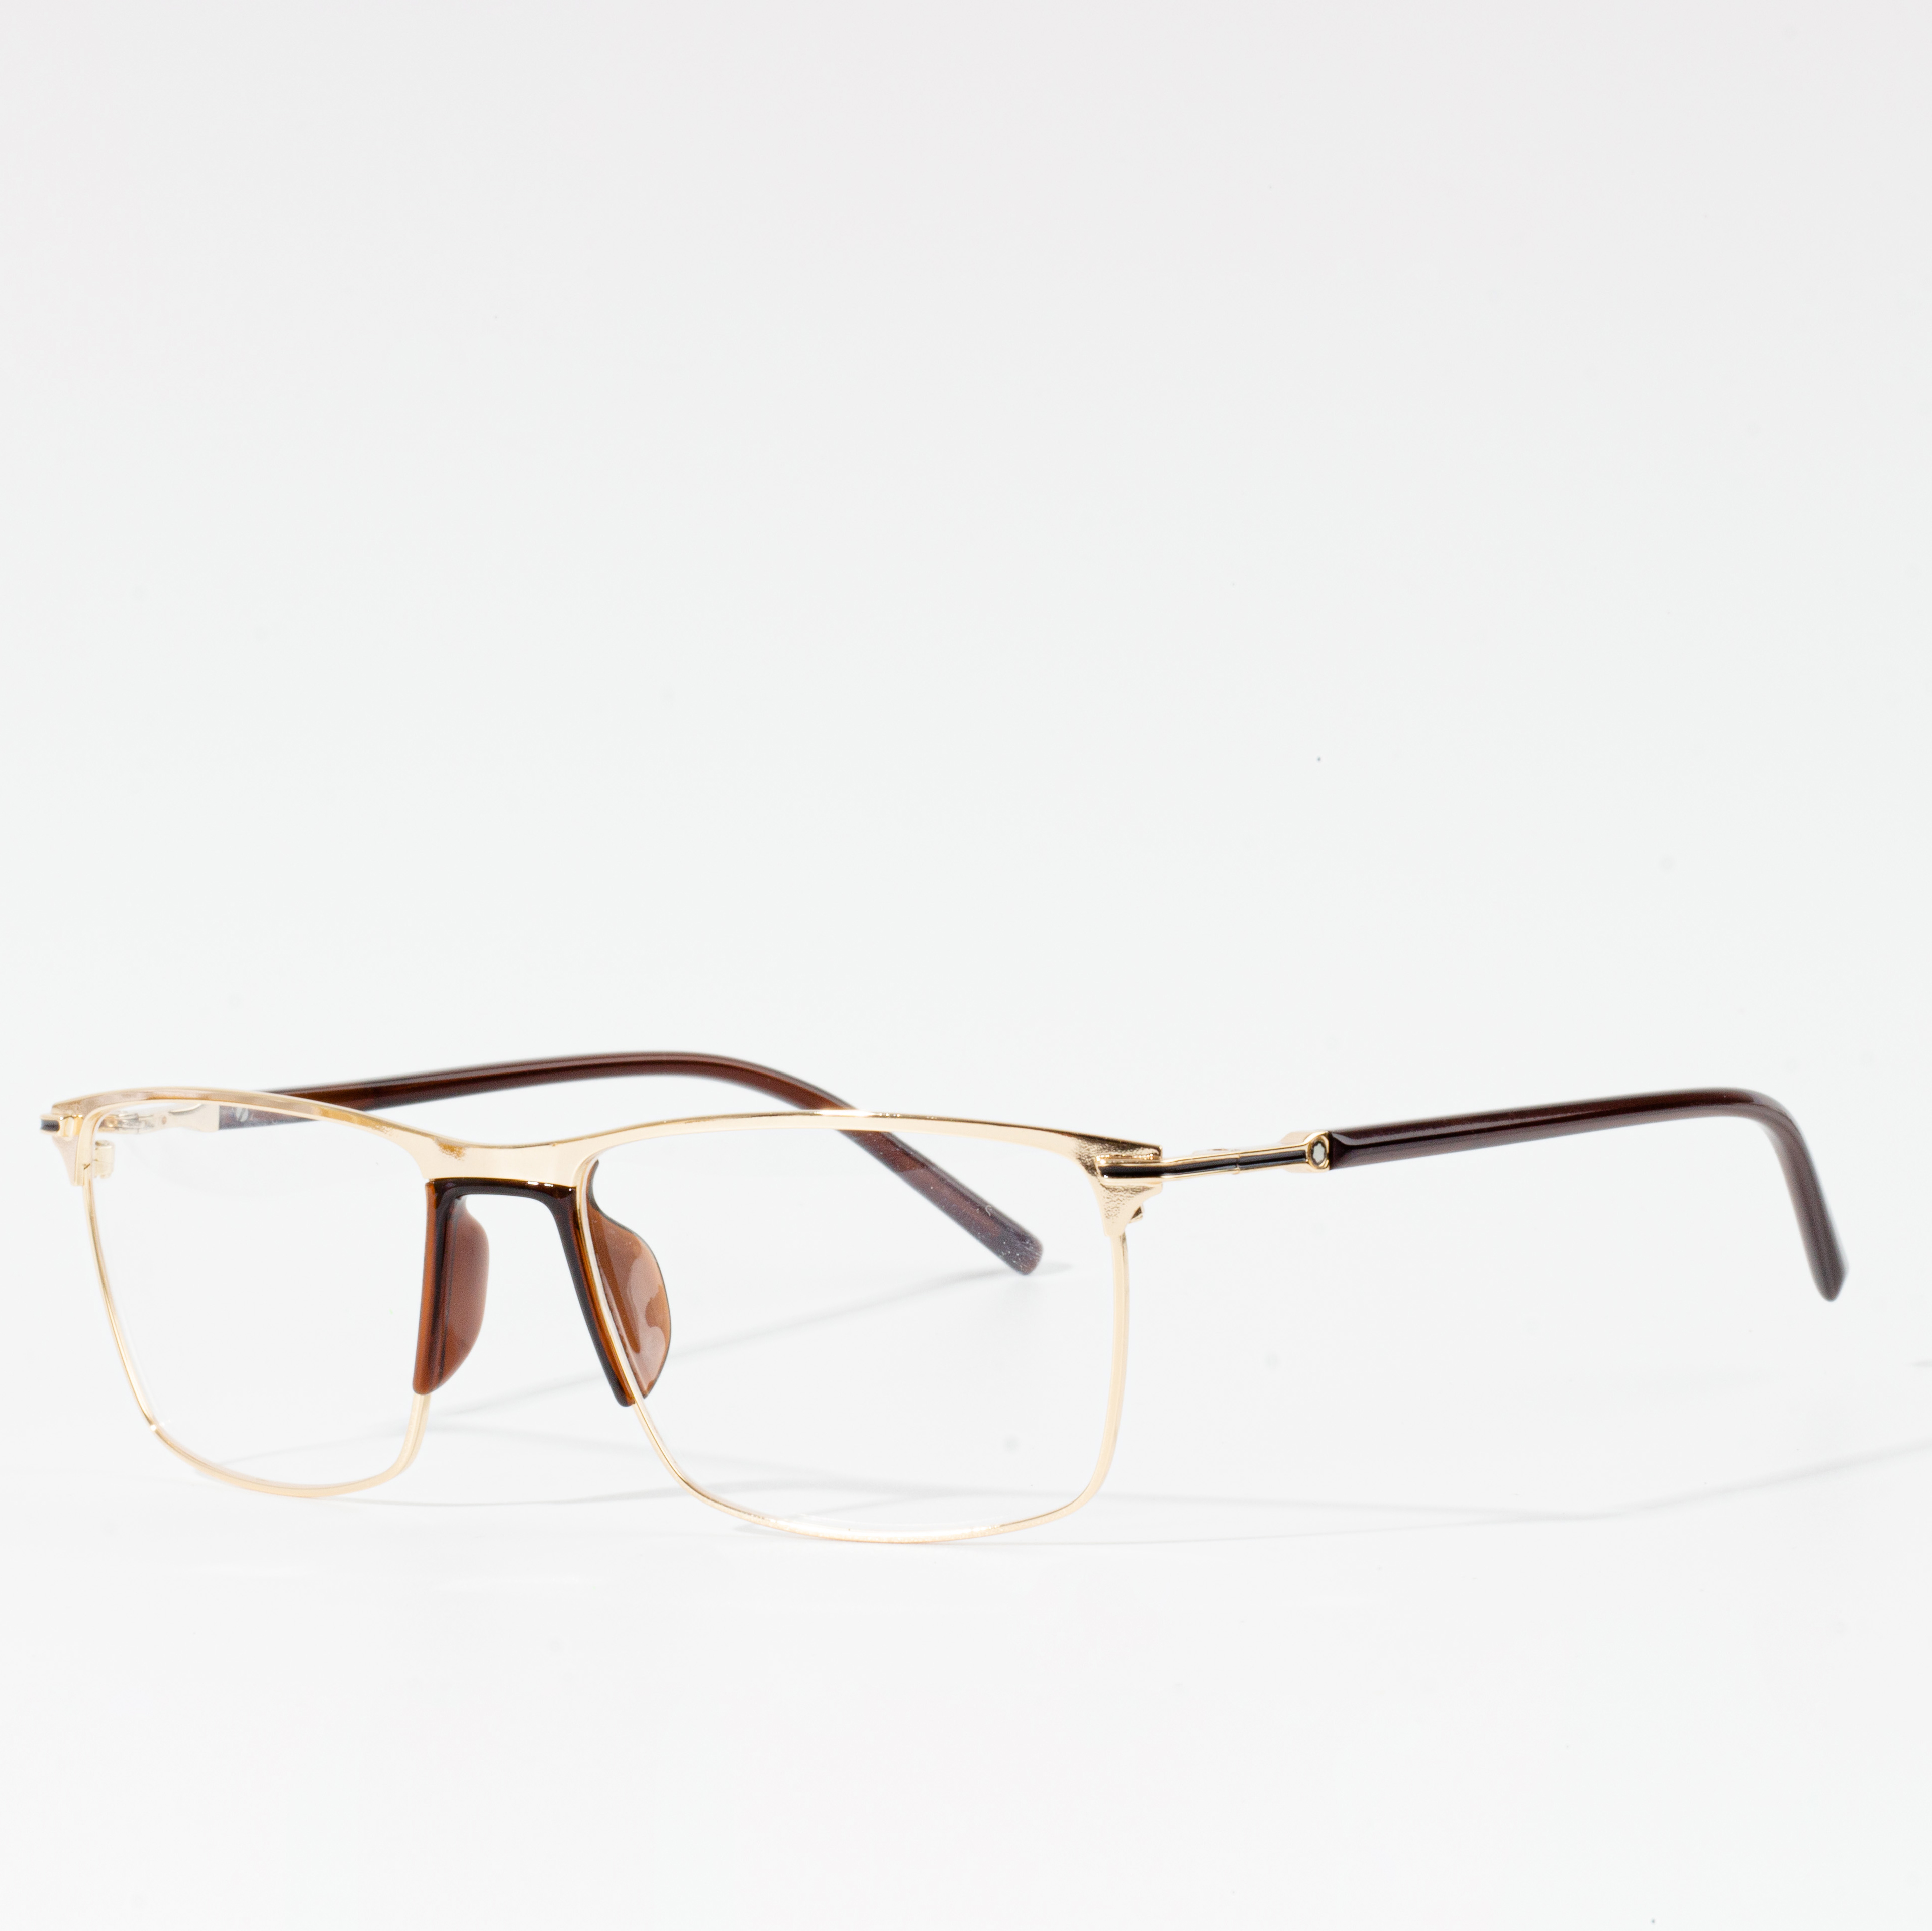 Kacamata optik frame pria